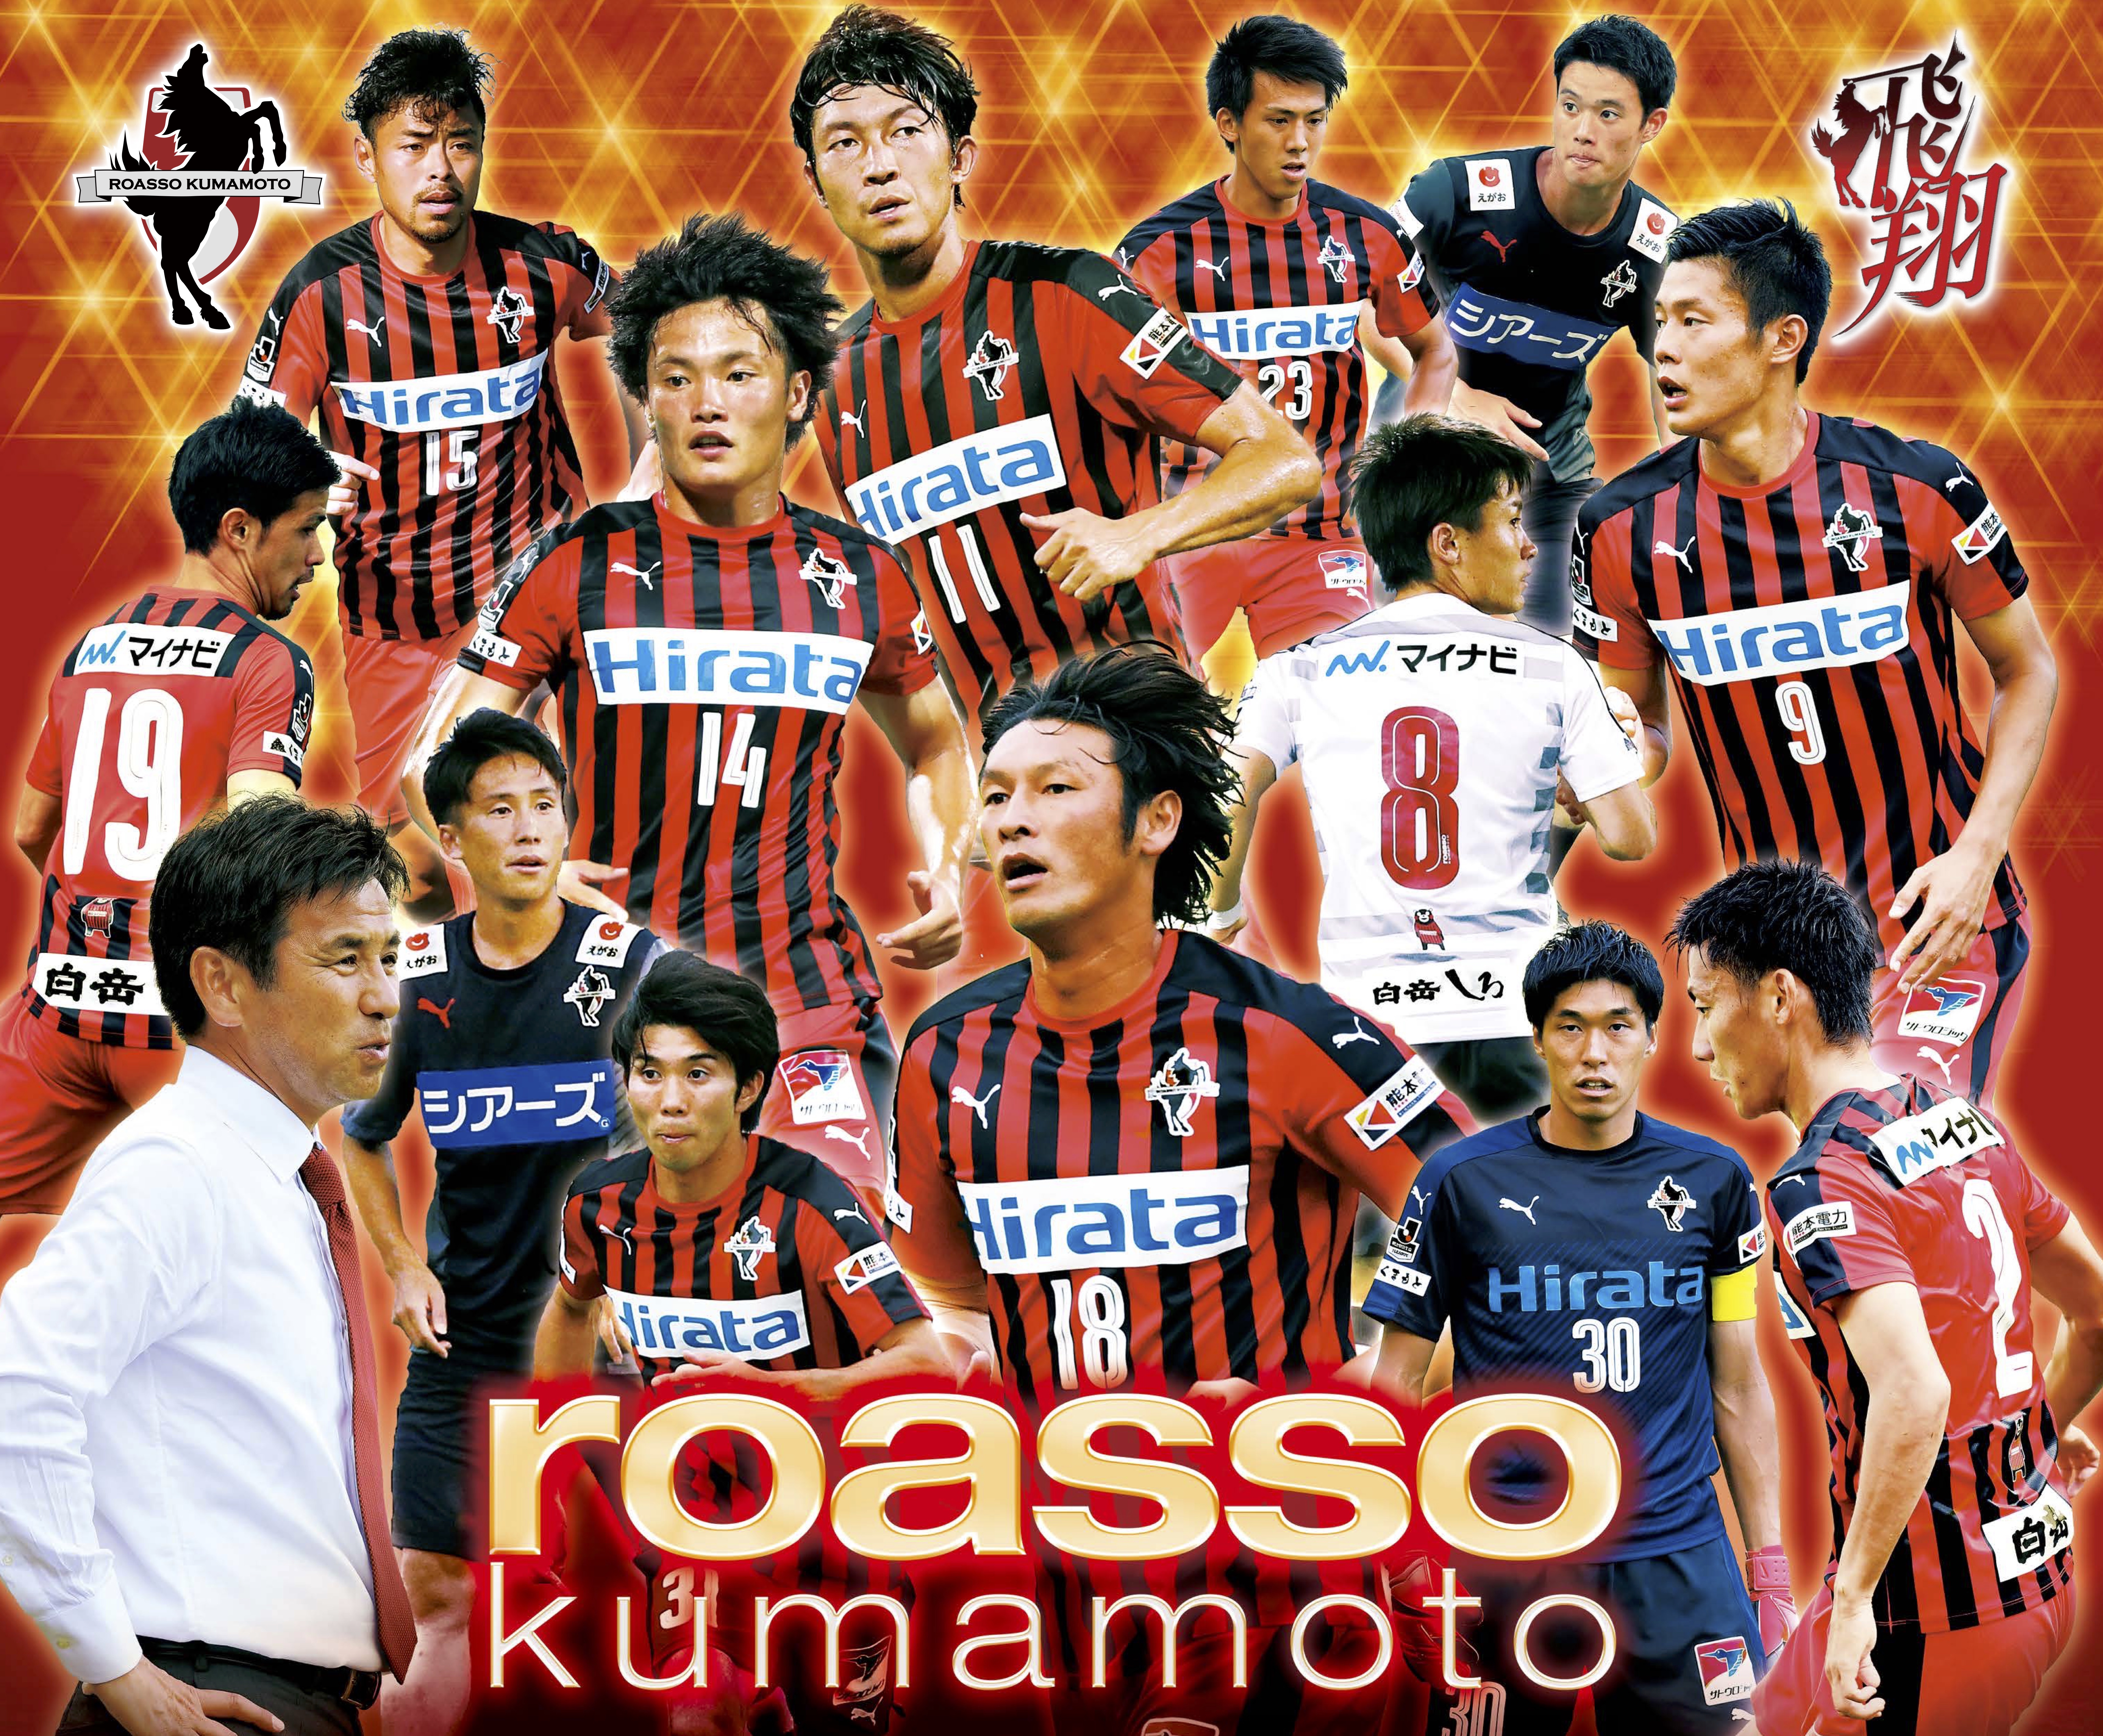 【スターティアホールディングス】プロサッカークラブ『ロアッソ熊本』と10月からサポートカンパニー契約を締結